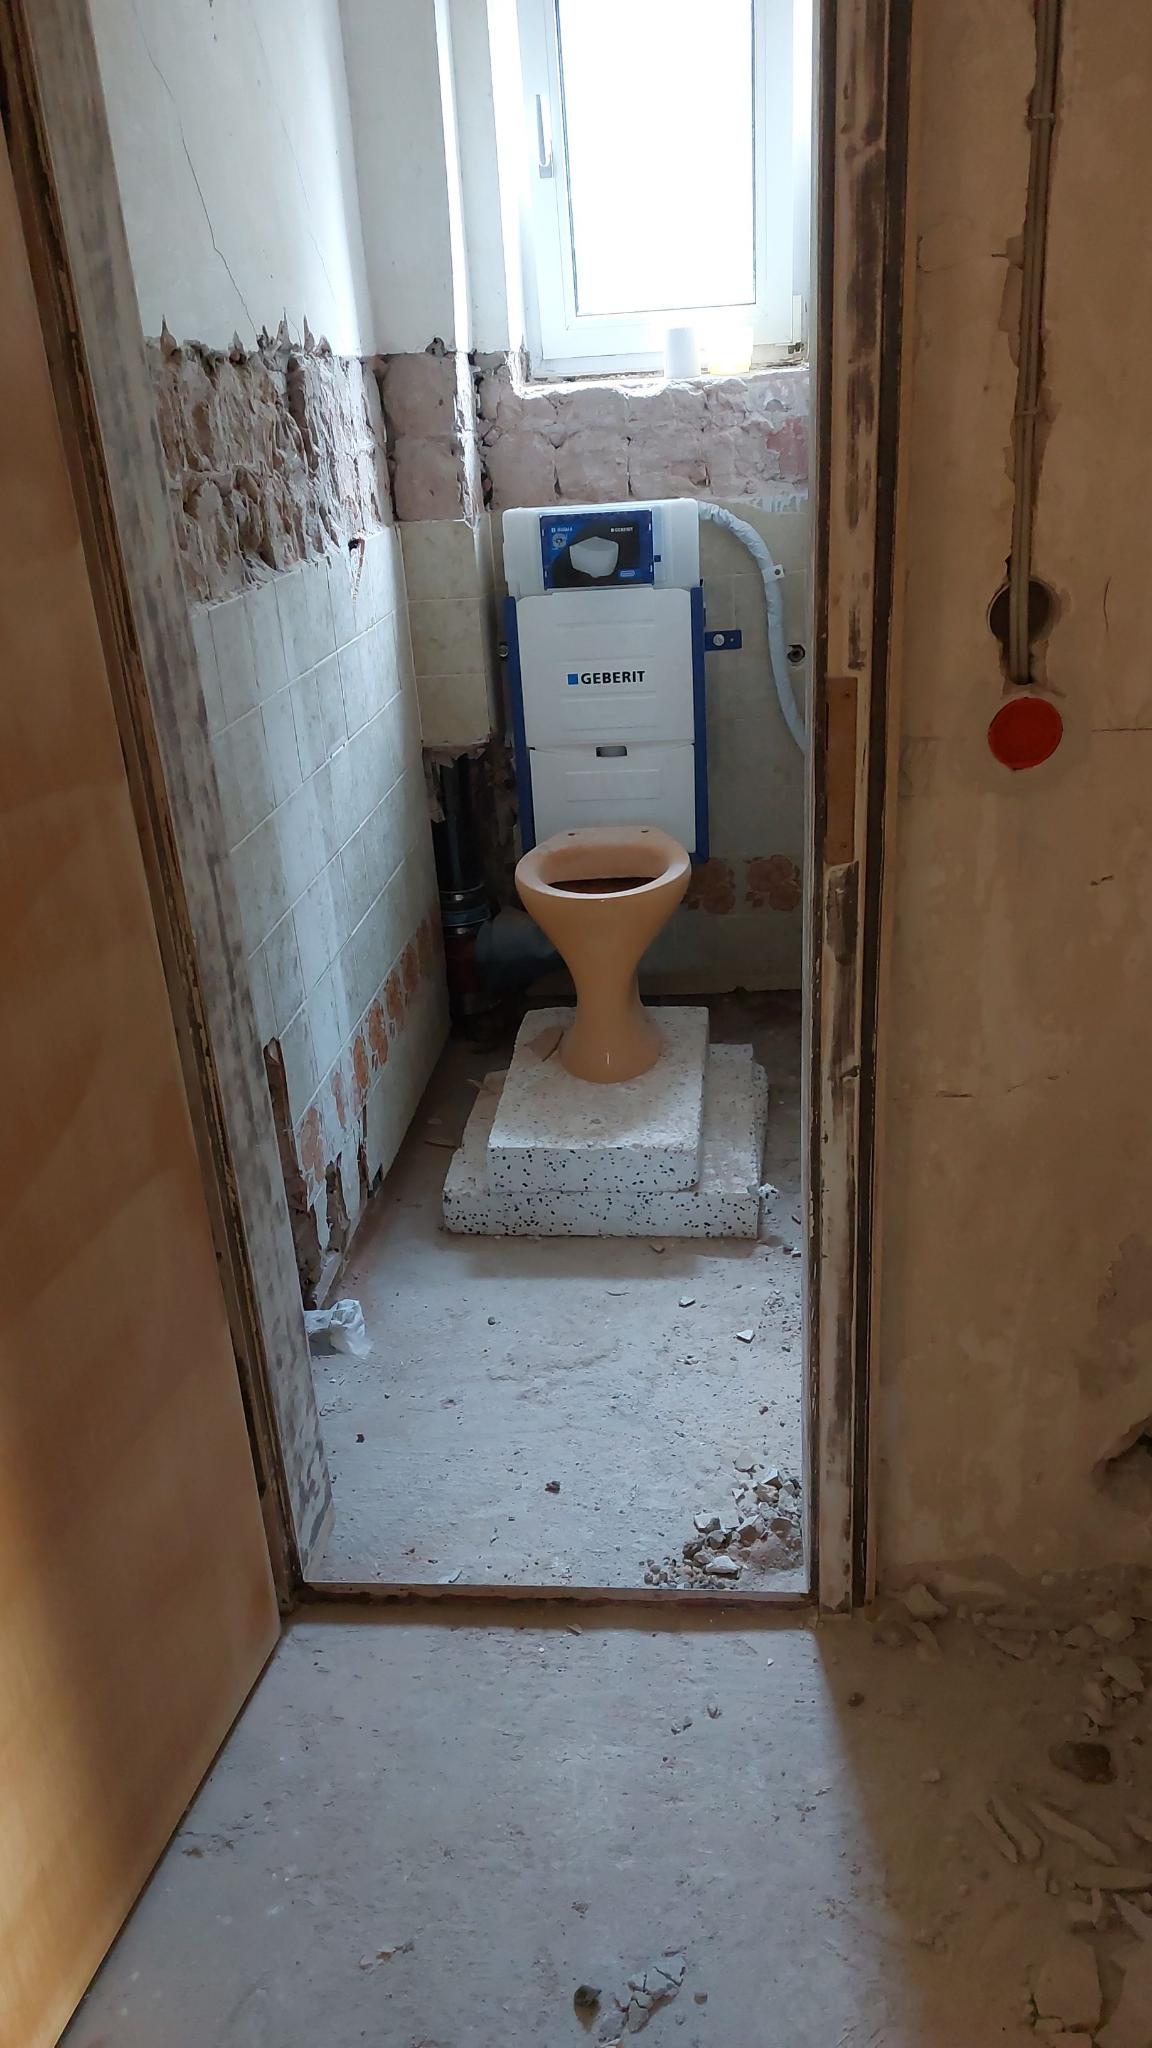 Zustand nach Installation in Toilette